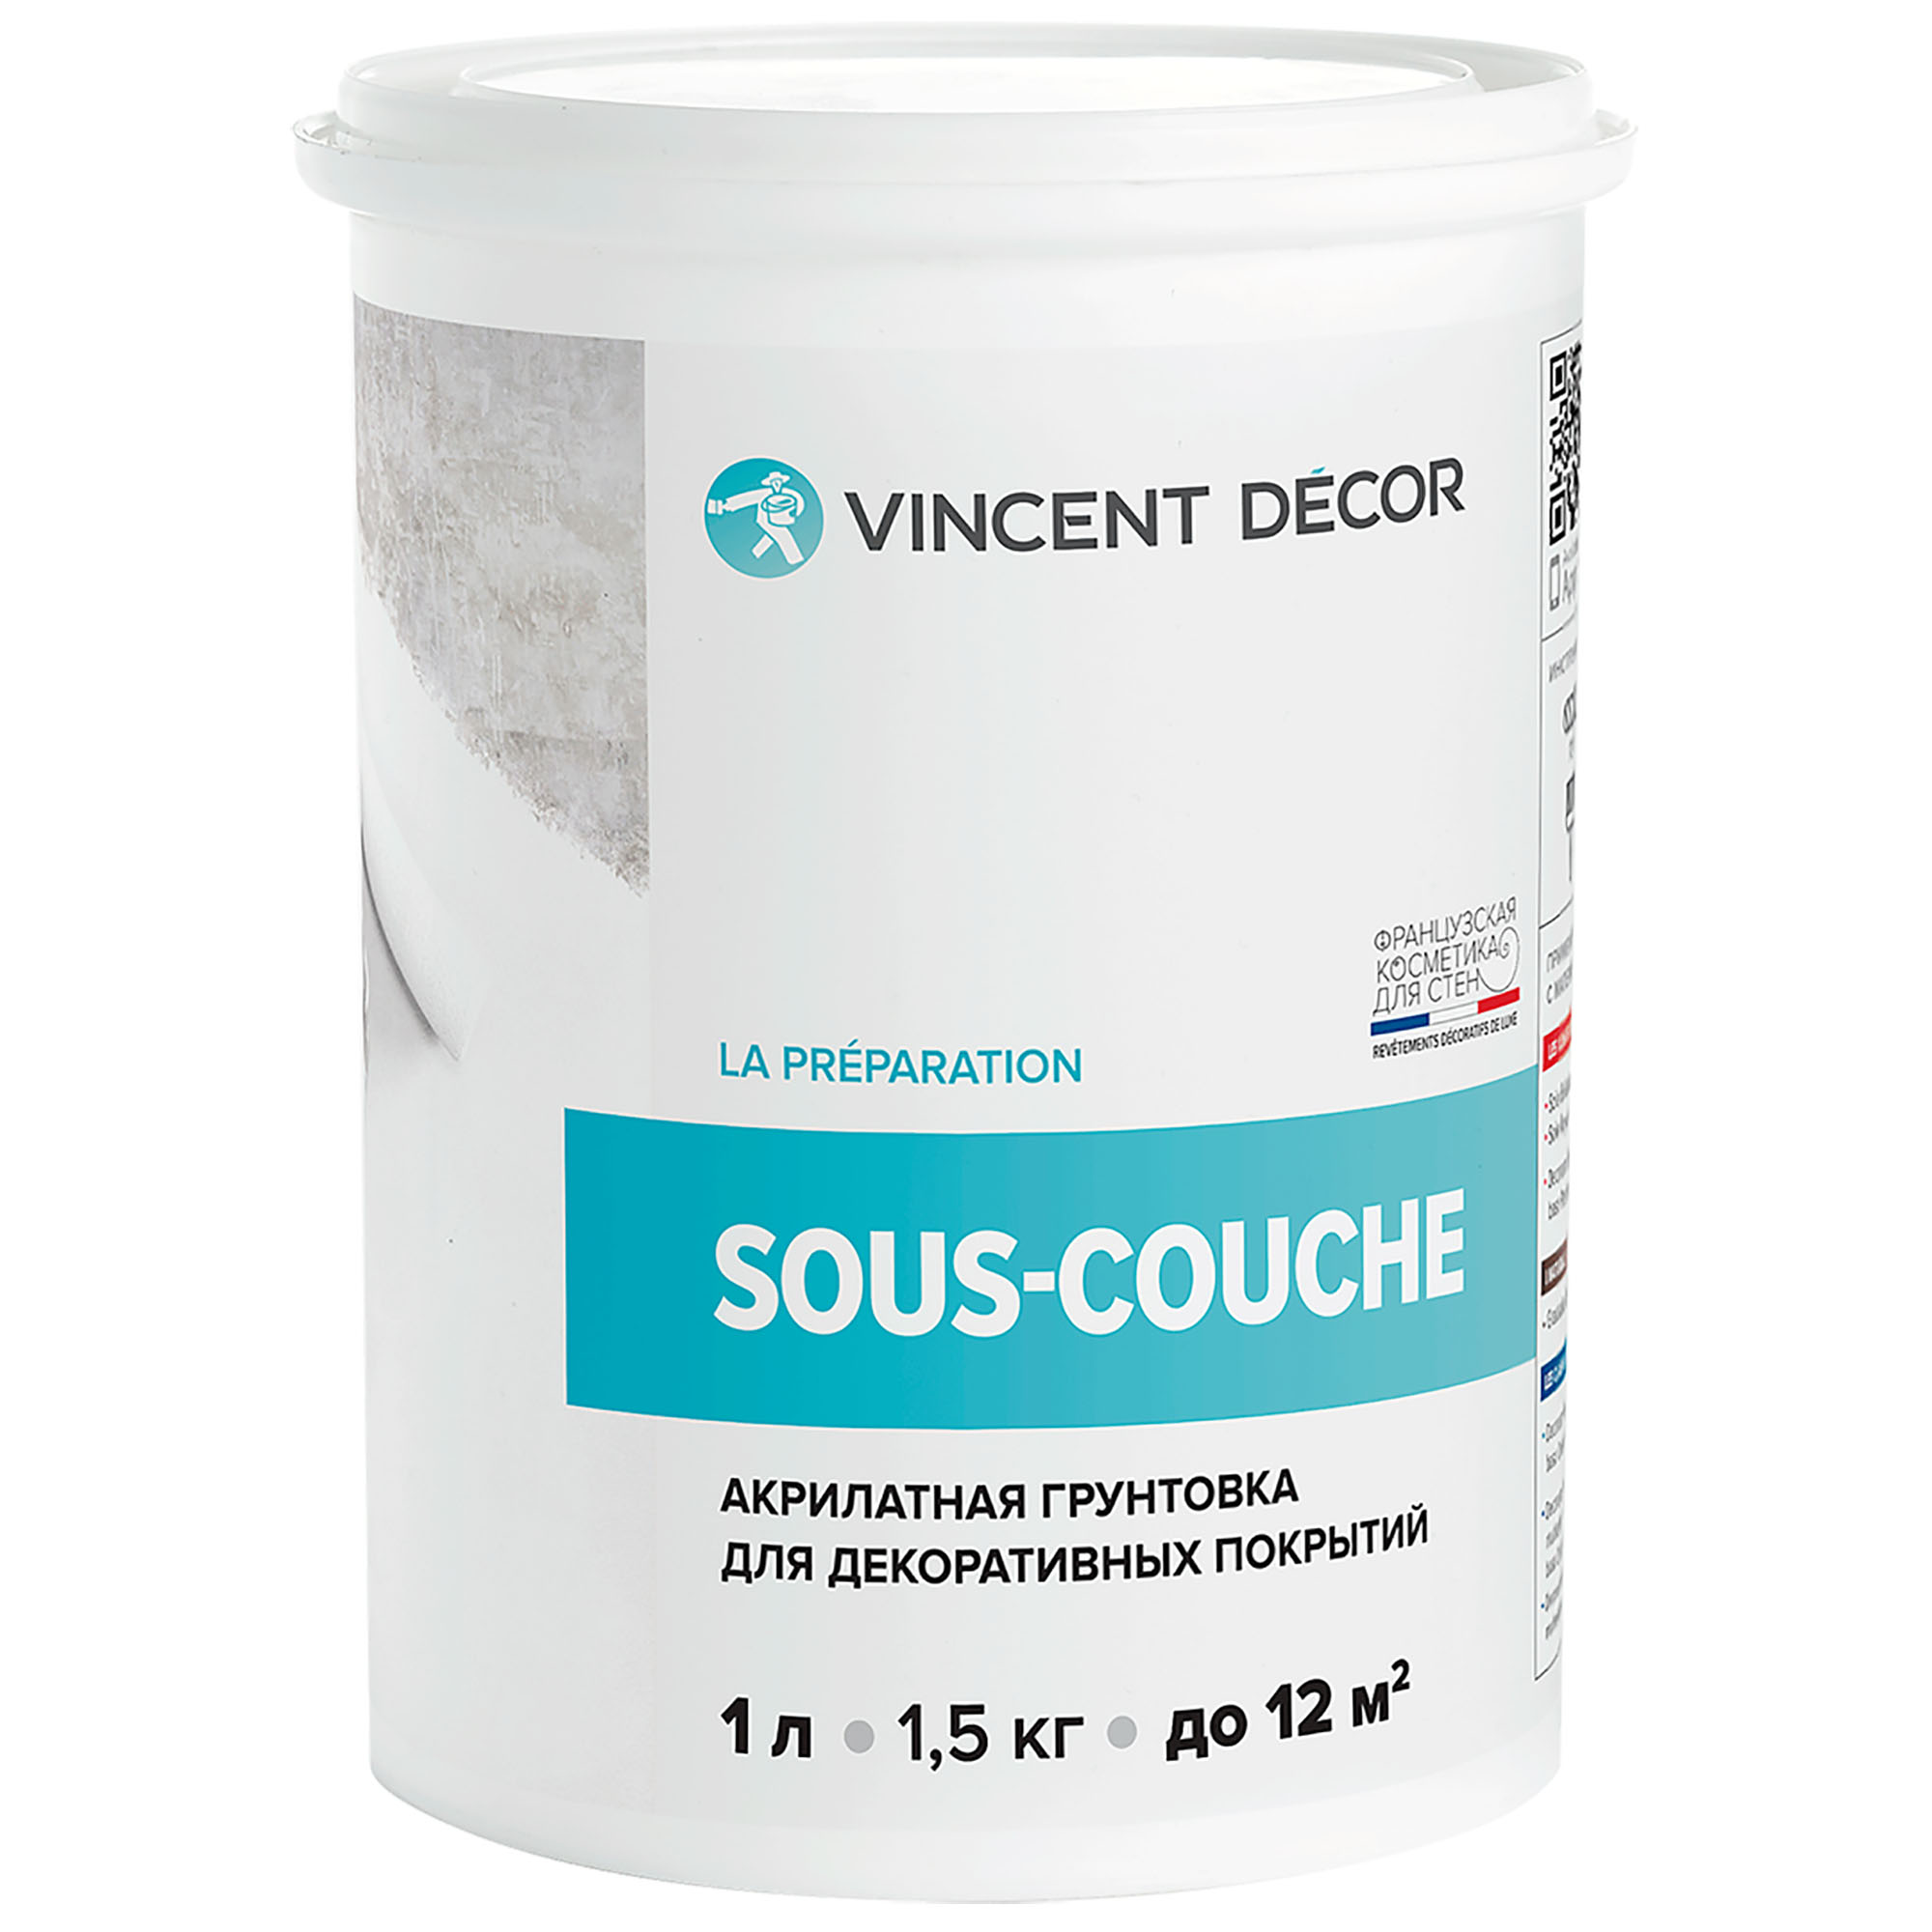 Грунтовка для декоративных покрытий Vincent Decor Sous-couche 1 л адгезионная грунтовка для декоративных покрытий farbitex